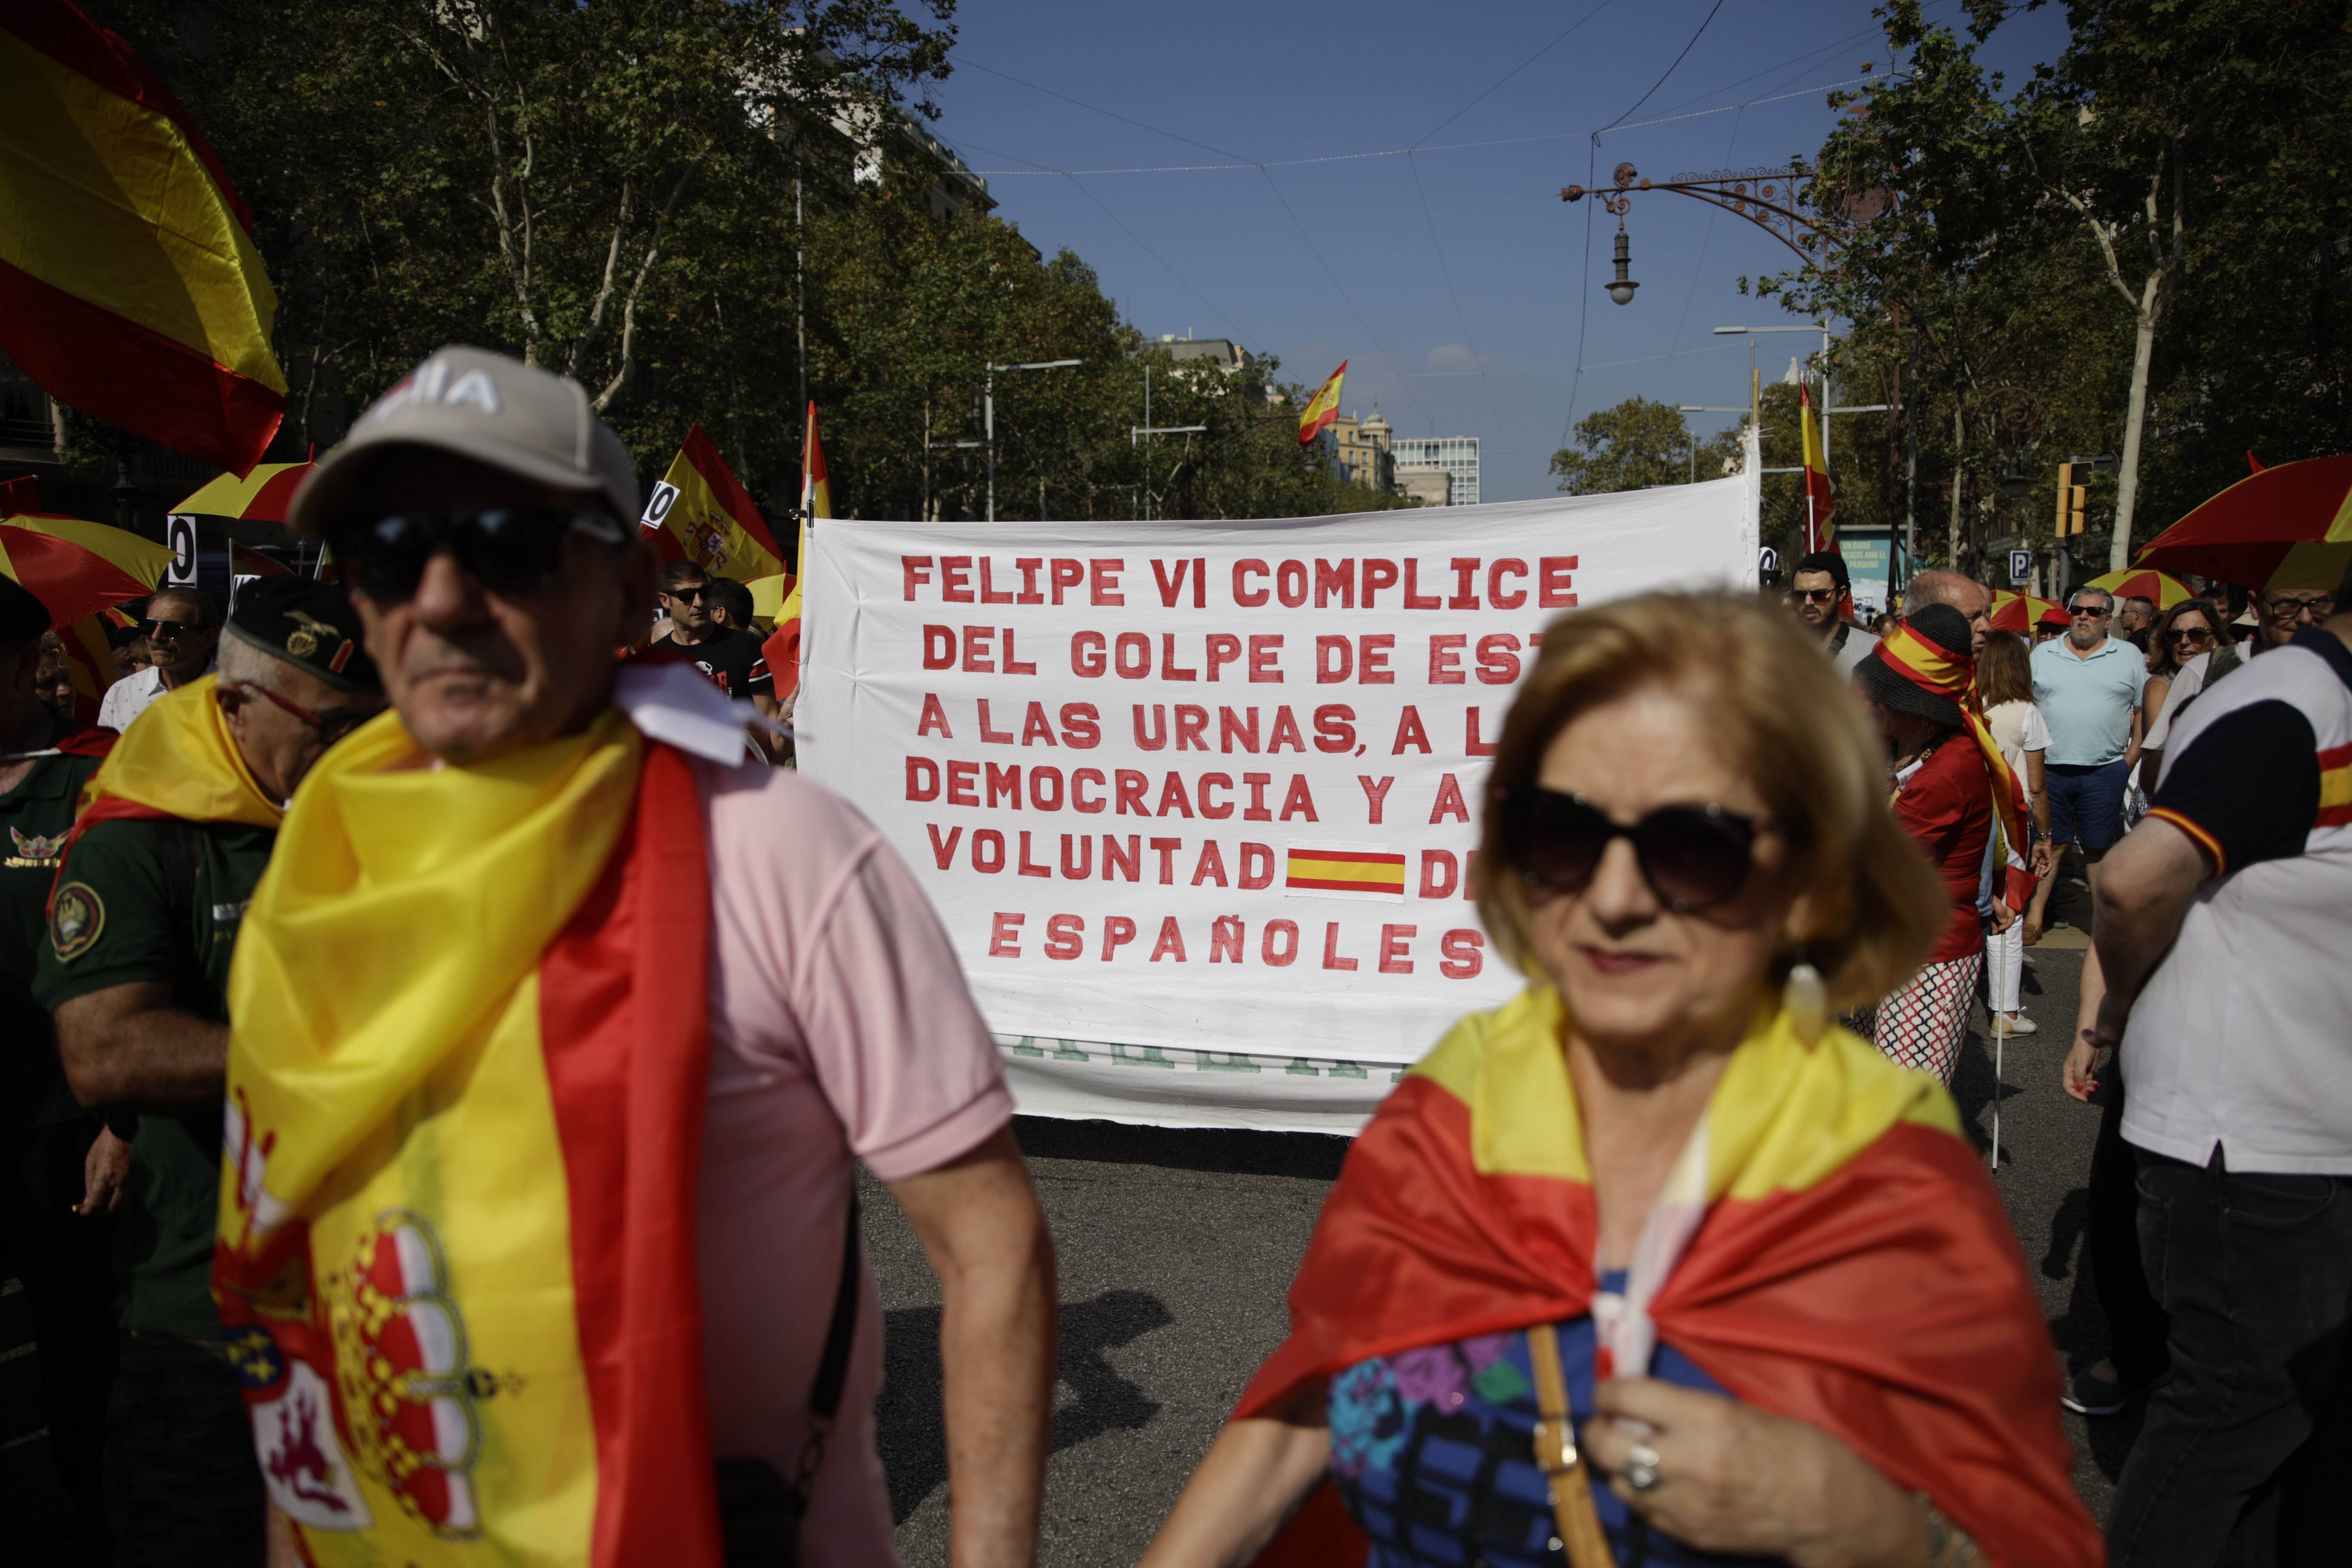 Felipe VI también recibe en la manifestación españolista: "Cómplice del golpe de Estado"